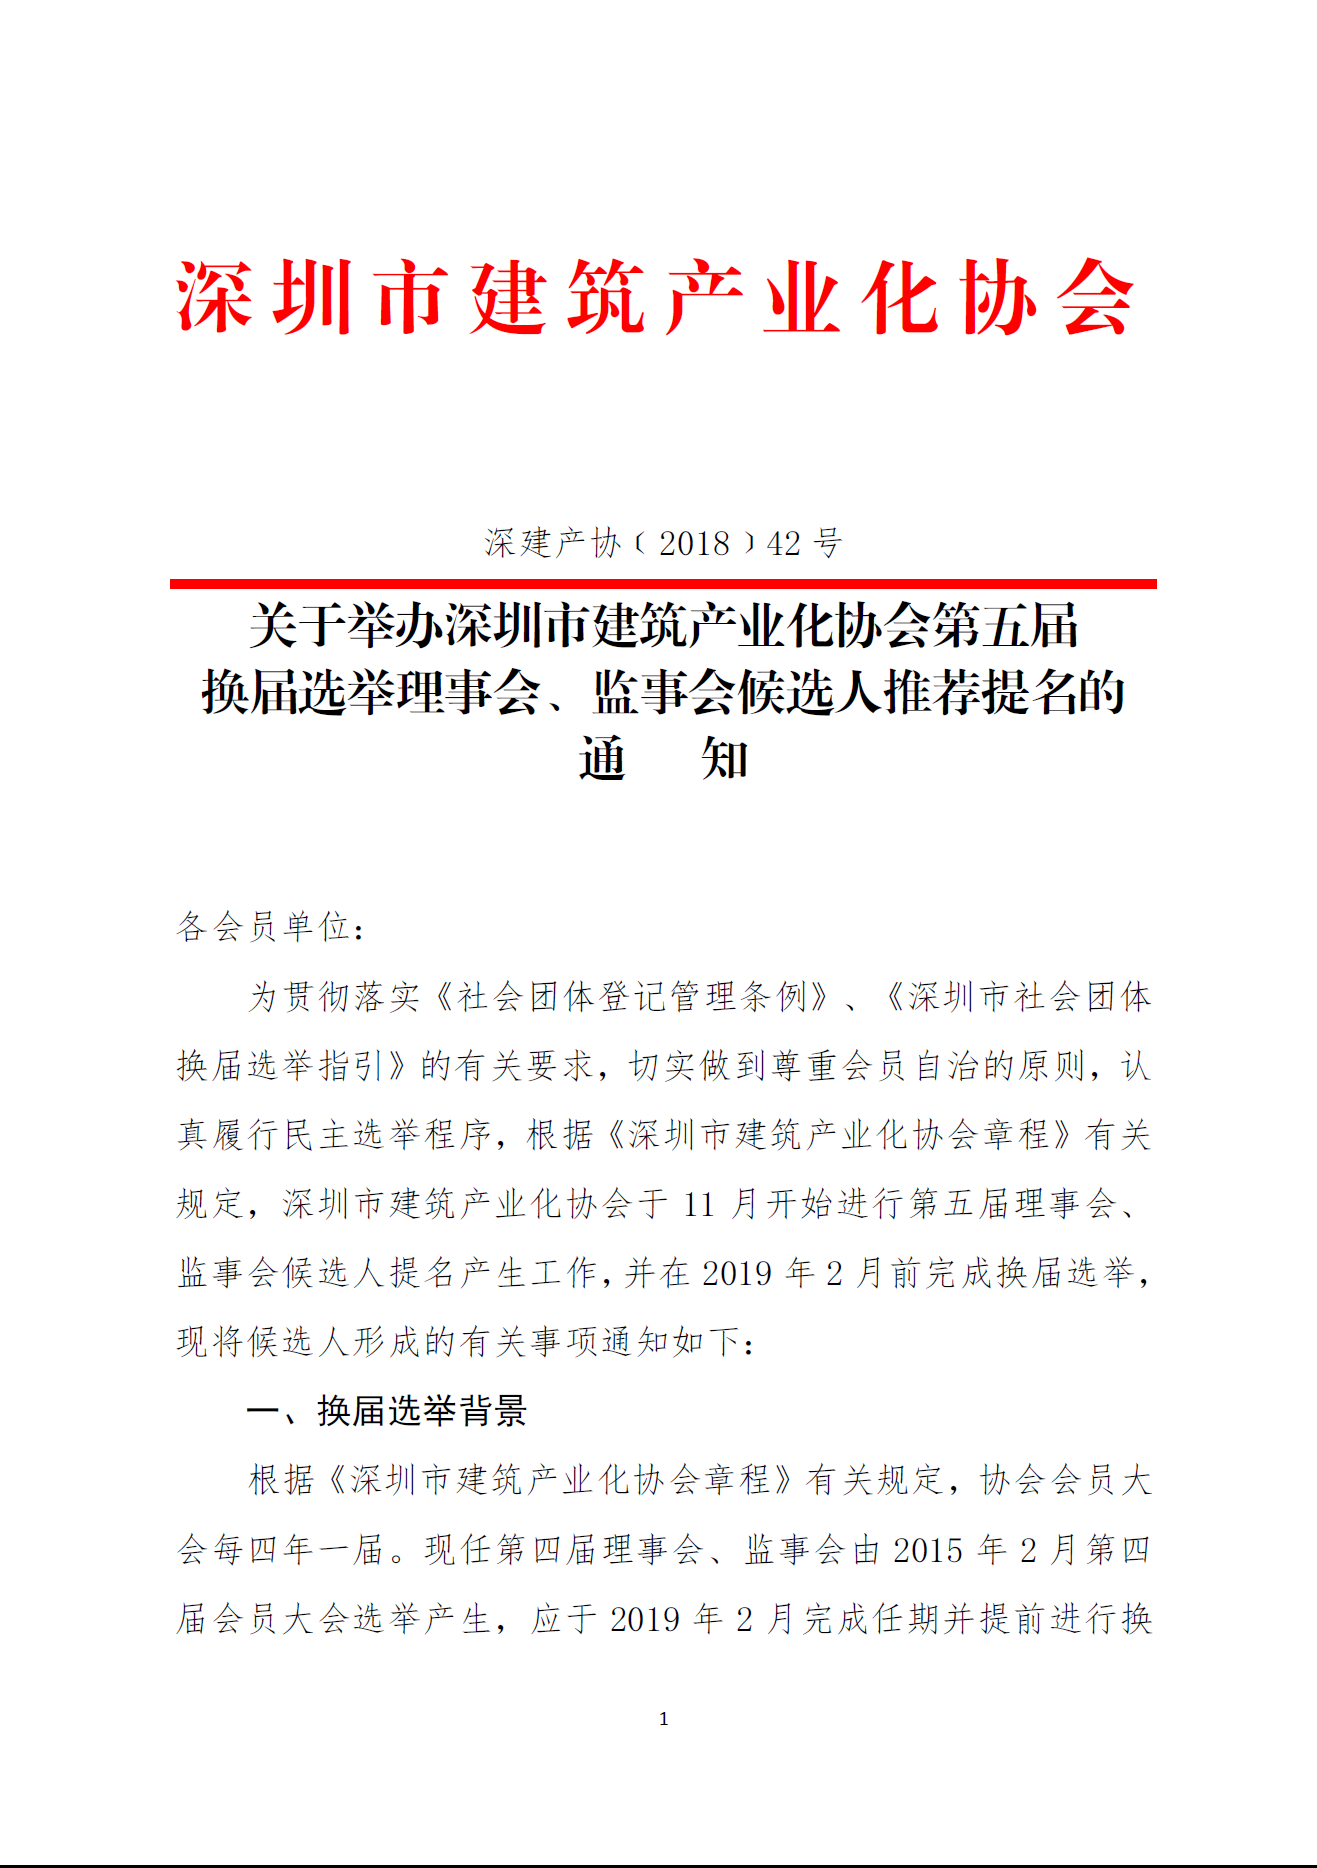 关于举办深圳市建筑产业化协会第五届换届选举理事会、监事会候选人推荐提名的通知